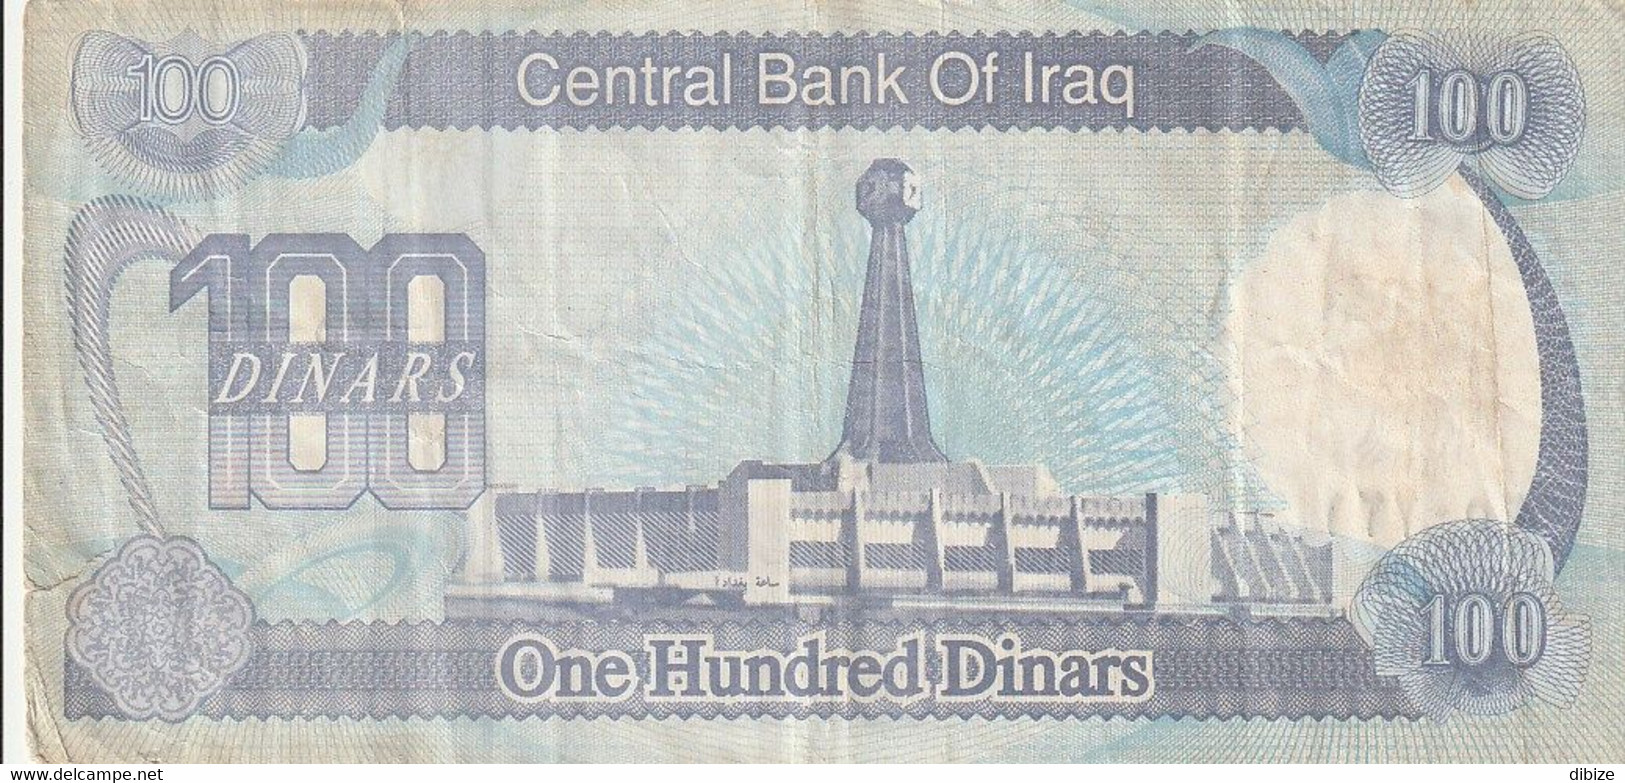 Billet De Banque Usagé. Iraq. 100 Dinars. 1994. Effigie De Saddam Hussain. Phare. Etat Moyen. Petite Déchirure. - Iraq